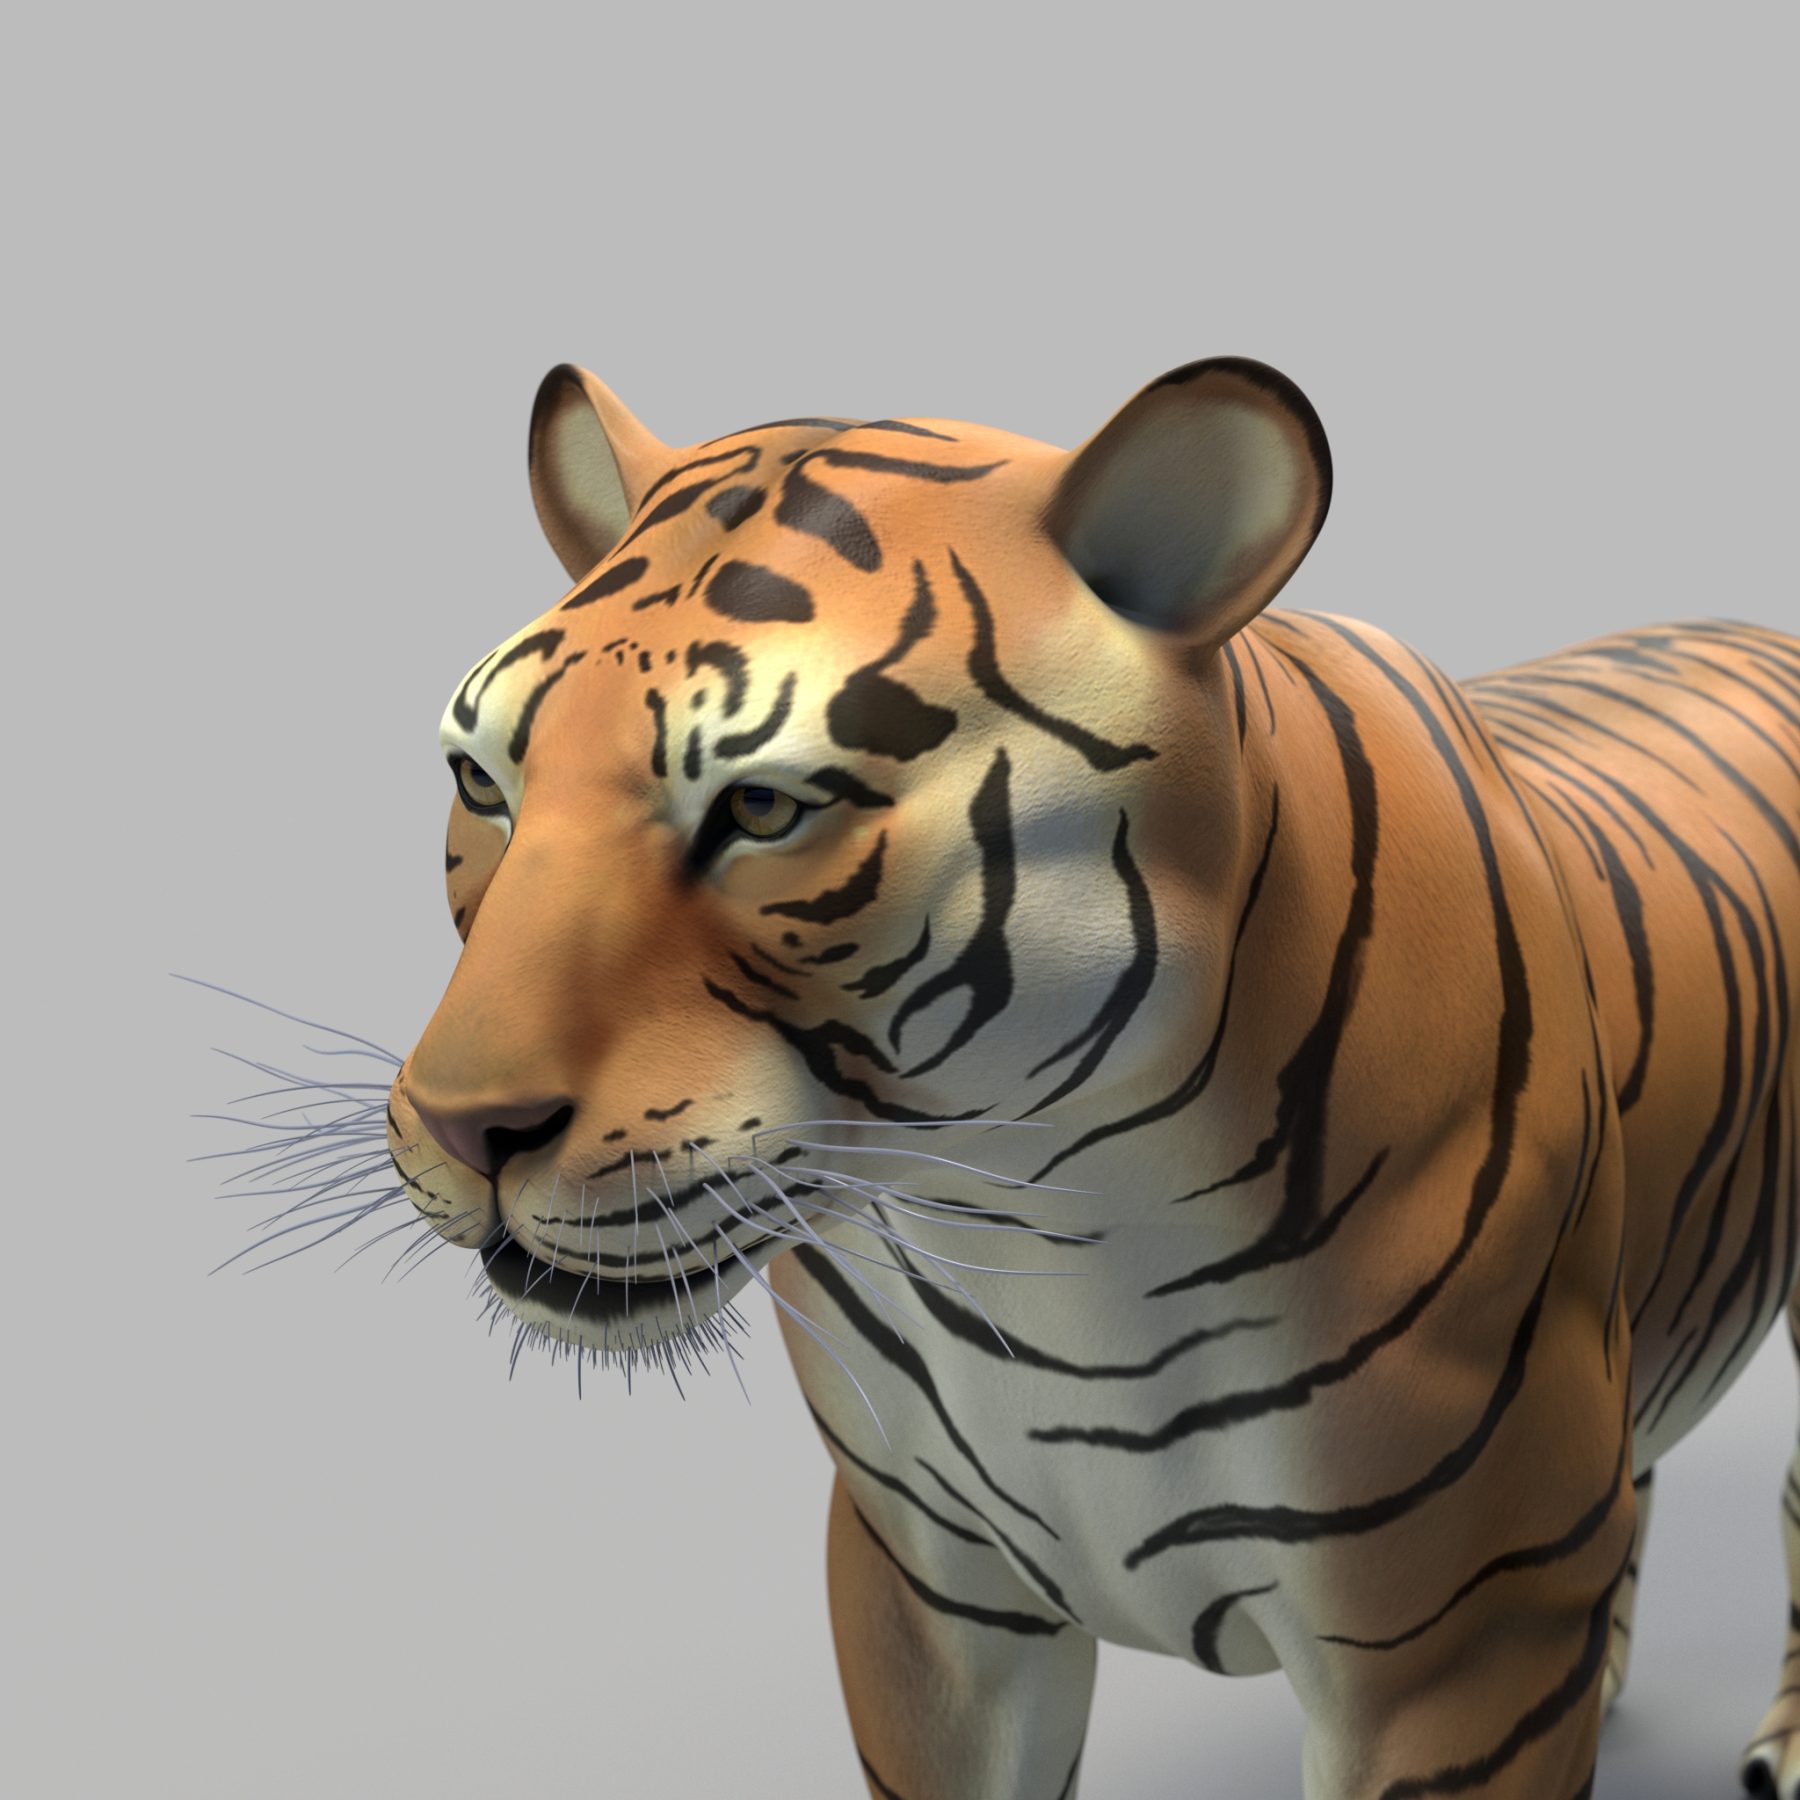 Bengal Tiger 3D Model